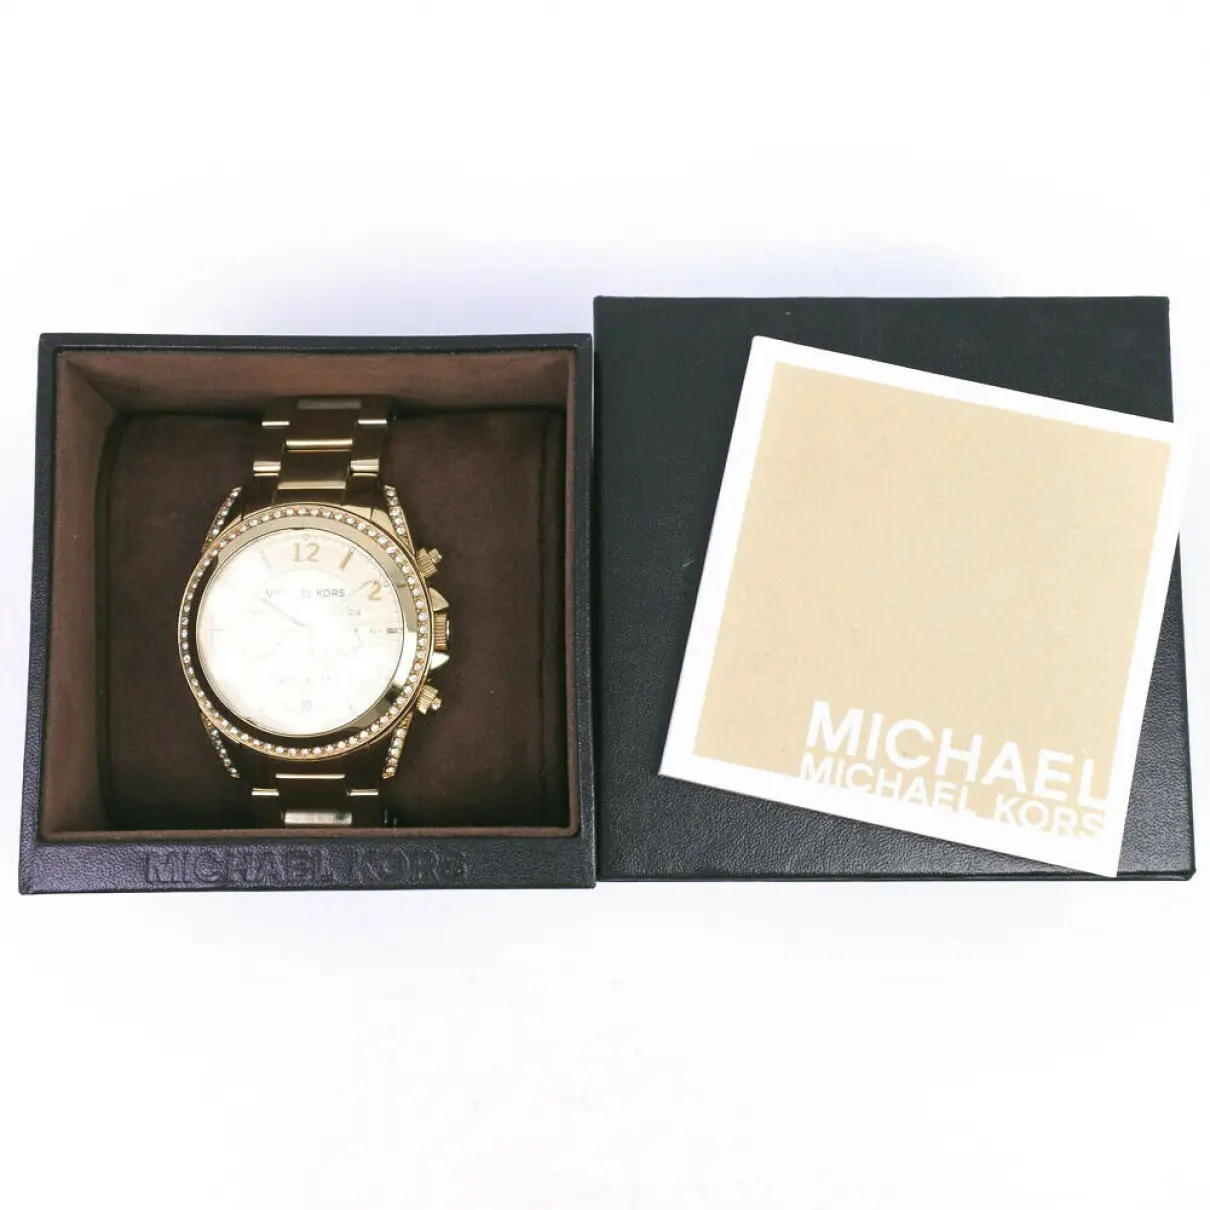 Buy Michael Kors Watch online